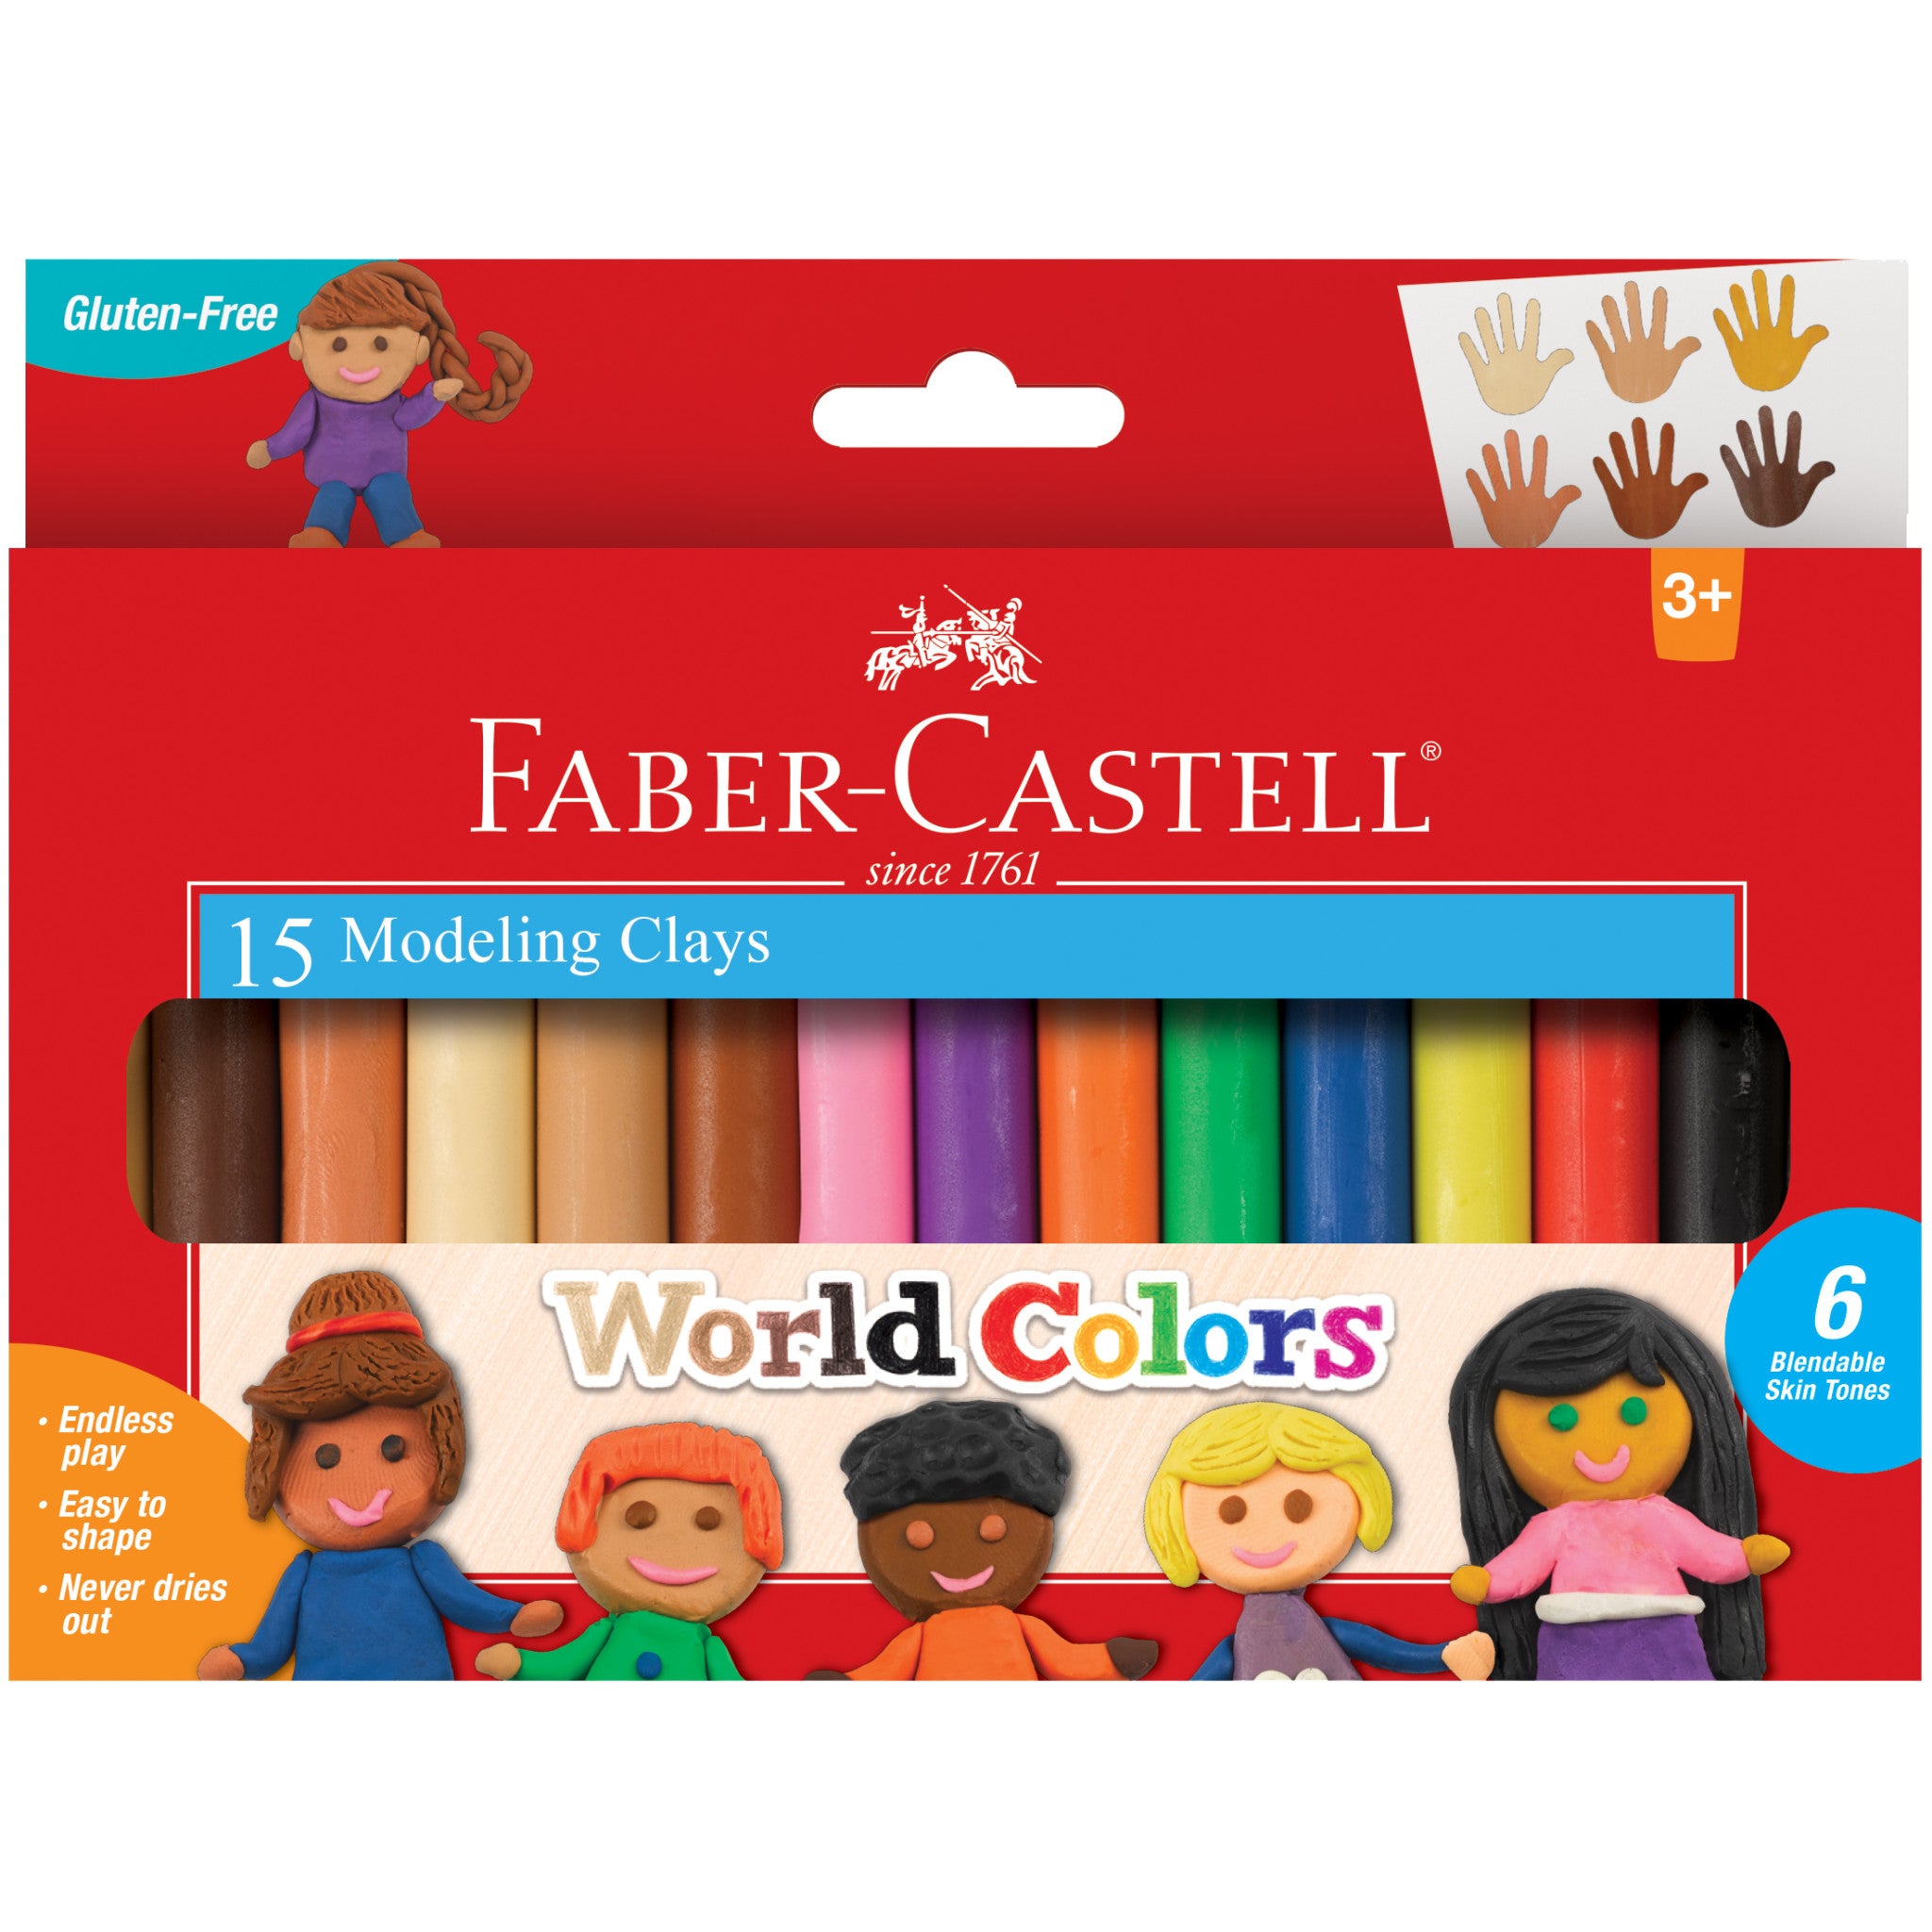 FABER CASTELL 120405 egg shape 4 colors crayon children's